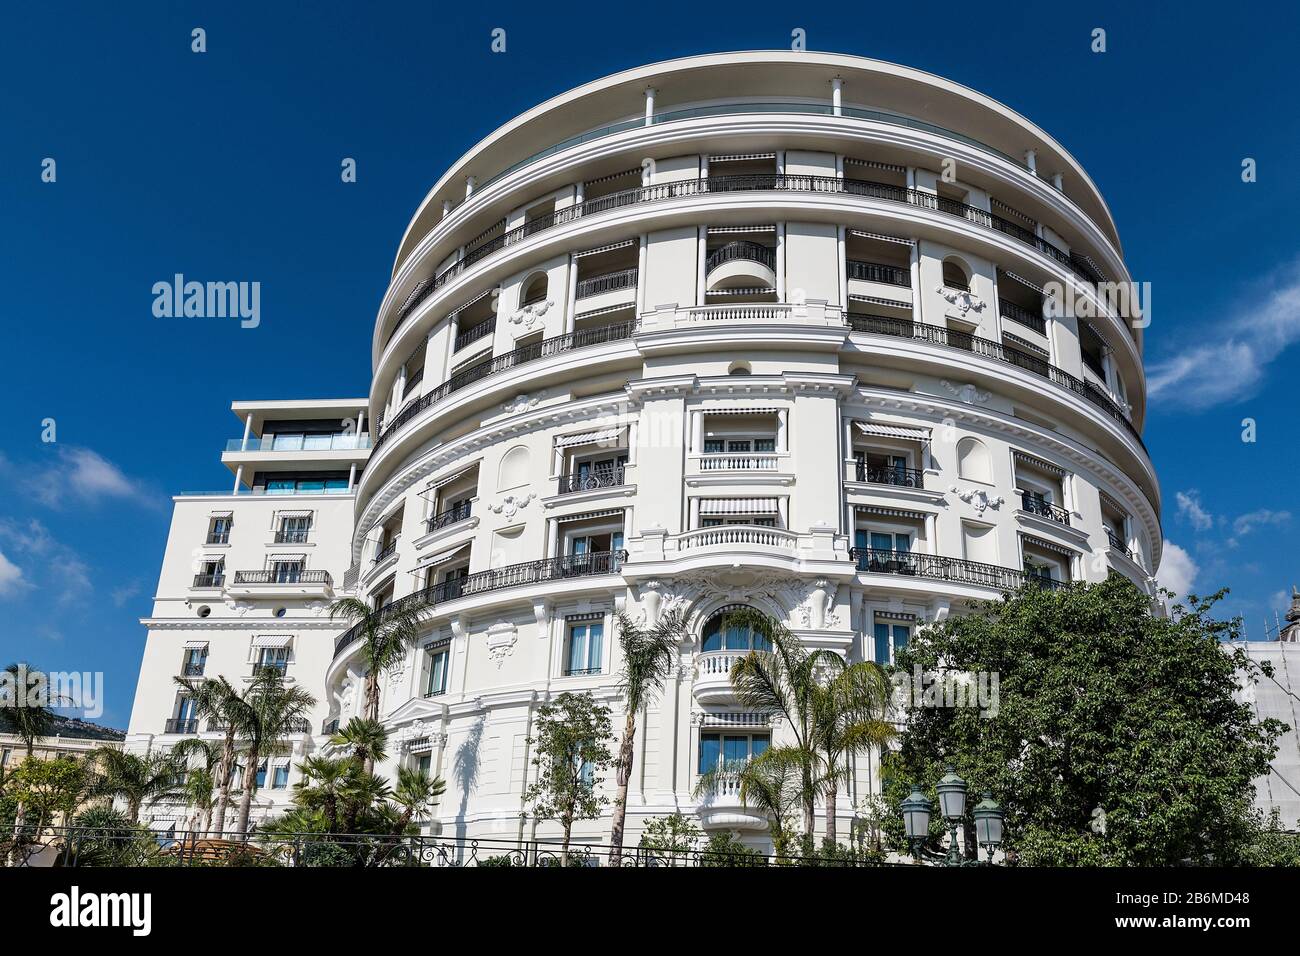 Detalle exterior del Hermitage Hotel en Mónaco. Foto de stock